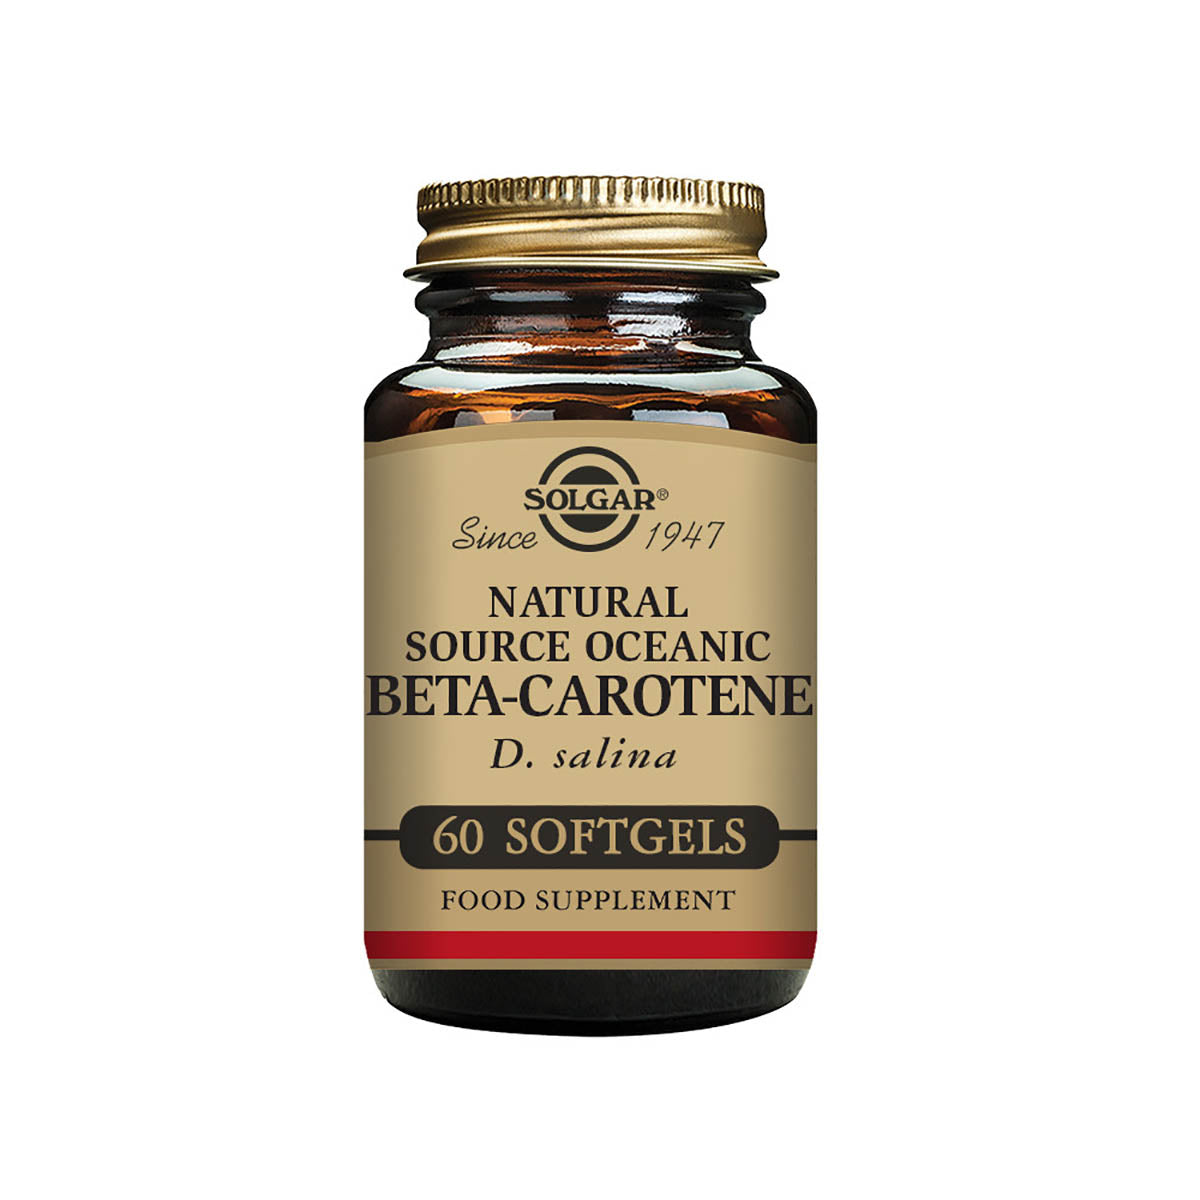 Solgar® Natural Source Oceanic Beta Carotene Softgels - Pack of 60